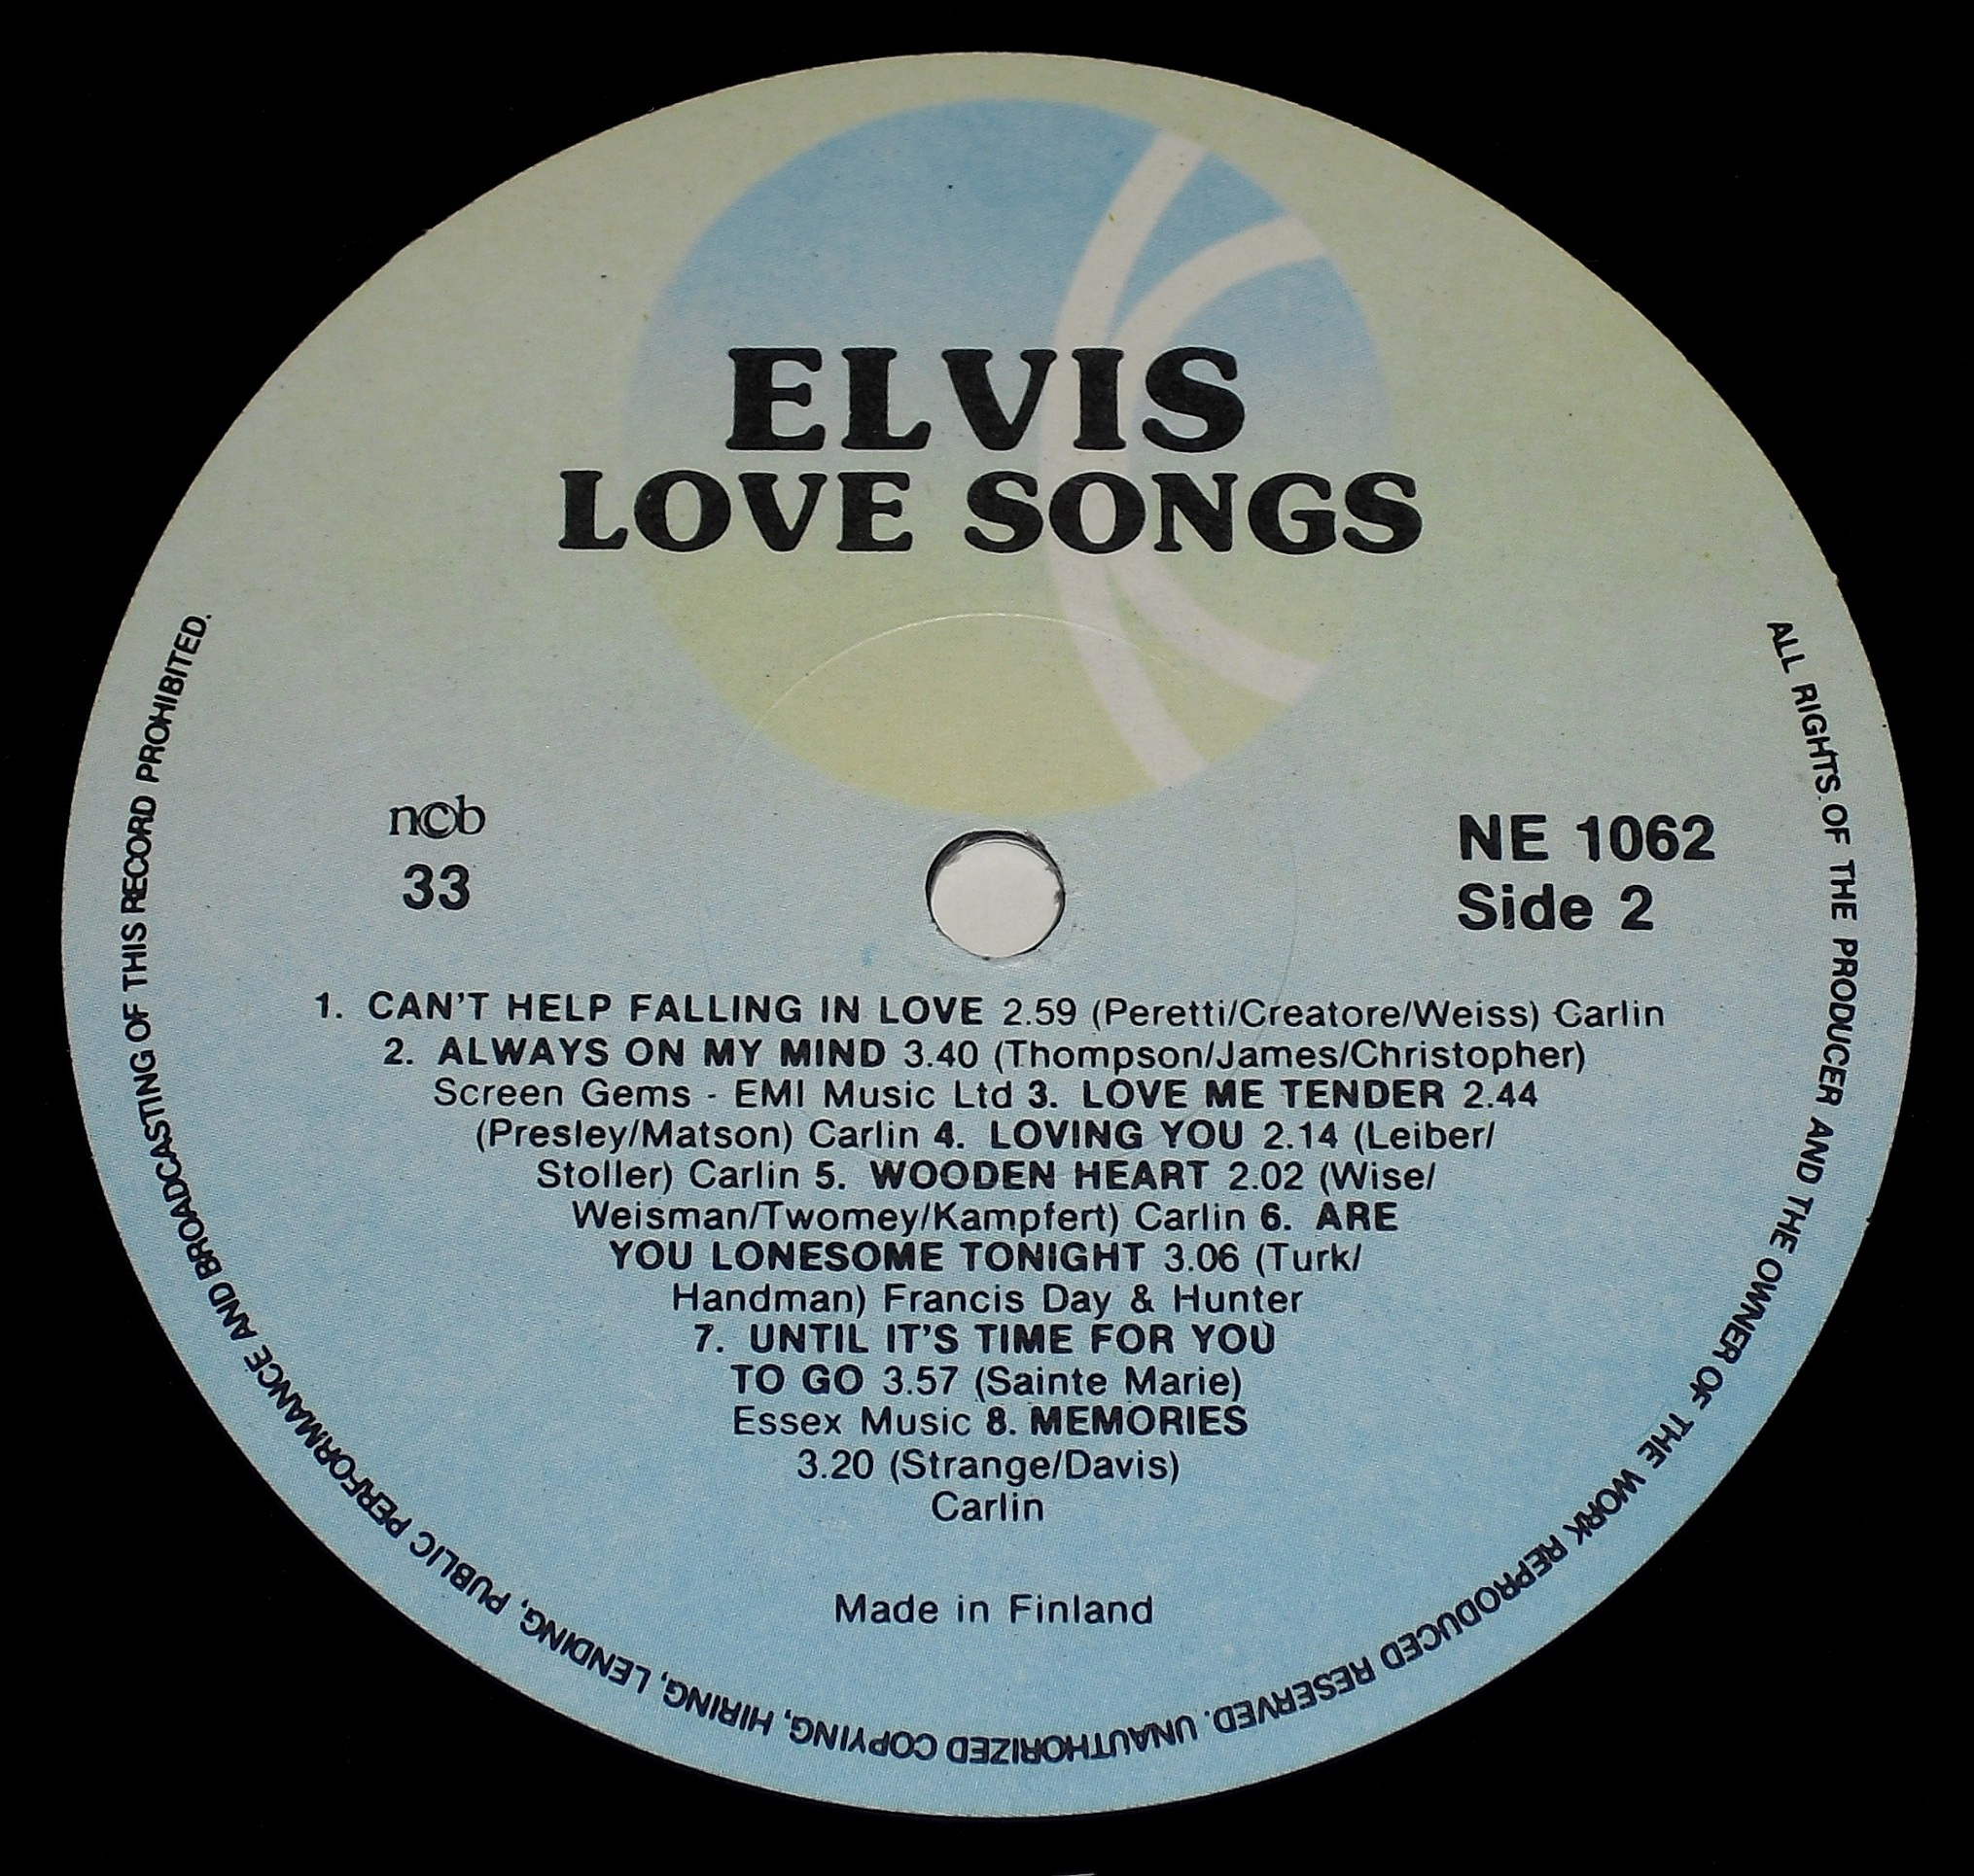 love - Finnland - ELVIS LOVE SONGS 03s23sqi9